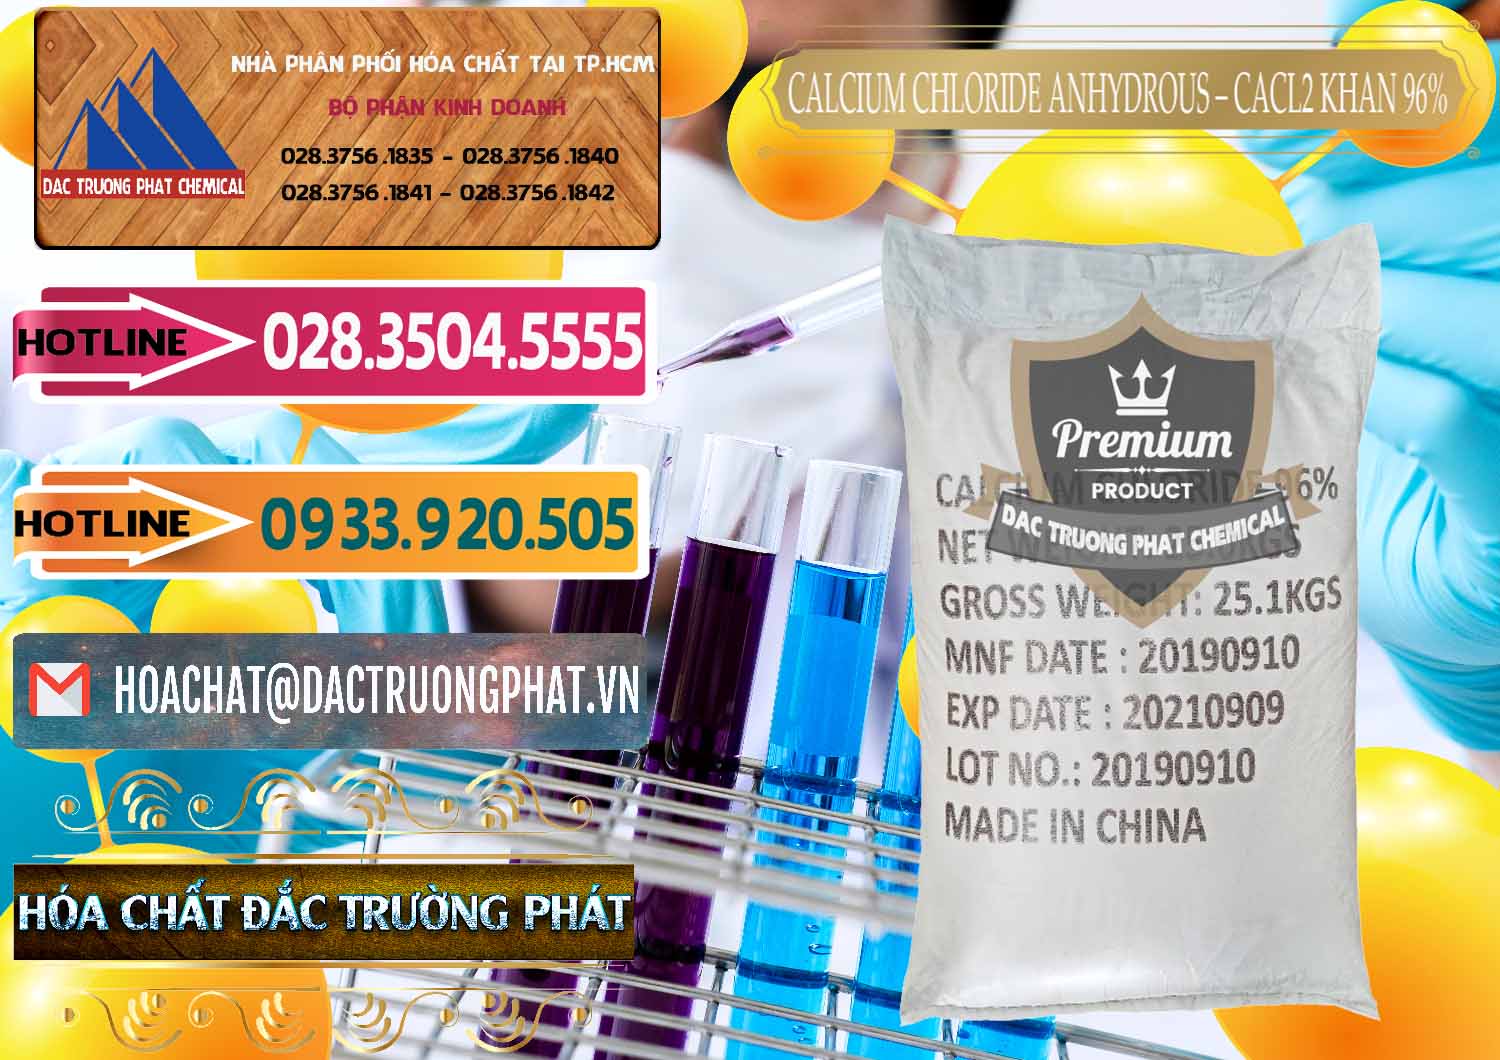 Nơi phân phối & bán CaCl2 – Canxi Clorua Anhydrous Khan 96% Trung Quốc China - 0043 - Chuyên bán _ cung cấp hóa chất tại TP.HCM - dactruongphat.vn